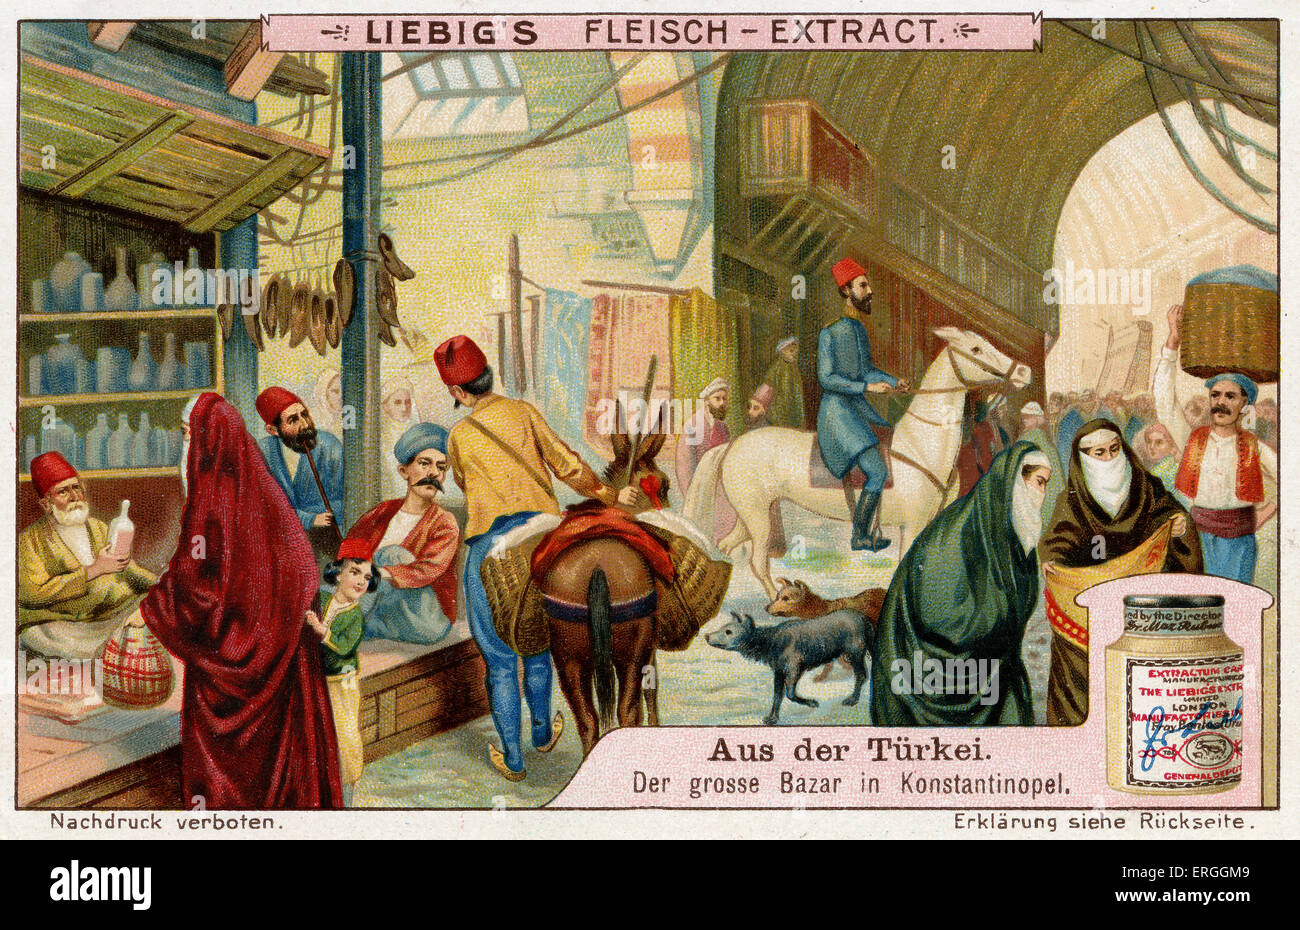 Türkei: Basar, Istanbul.   Illustration von 1910. Liebig-Sammelkartenspiel (Serie: Aus der Sprache). Früher bekannt als Stockfoto